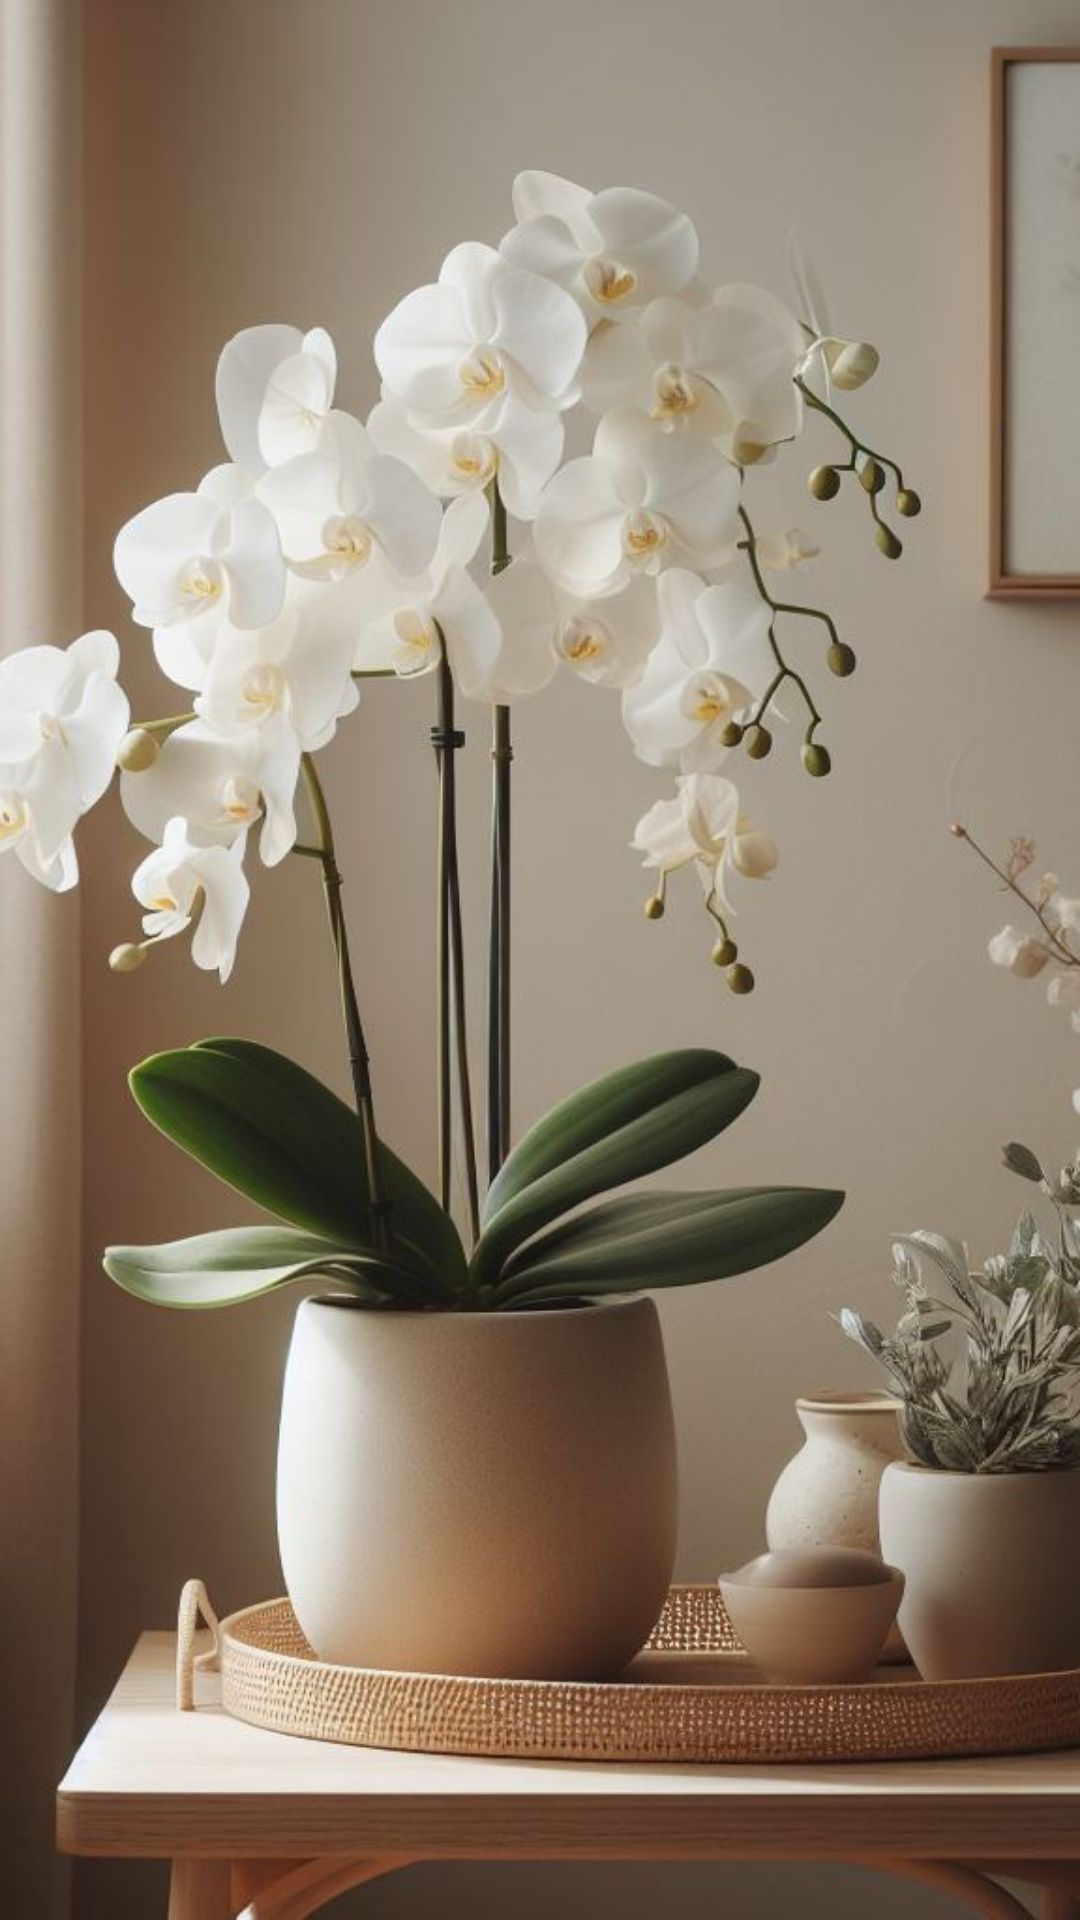 Beleza eterna: orquídeas brancas artificiais para decorar e encantar